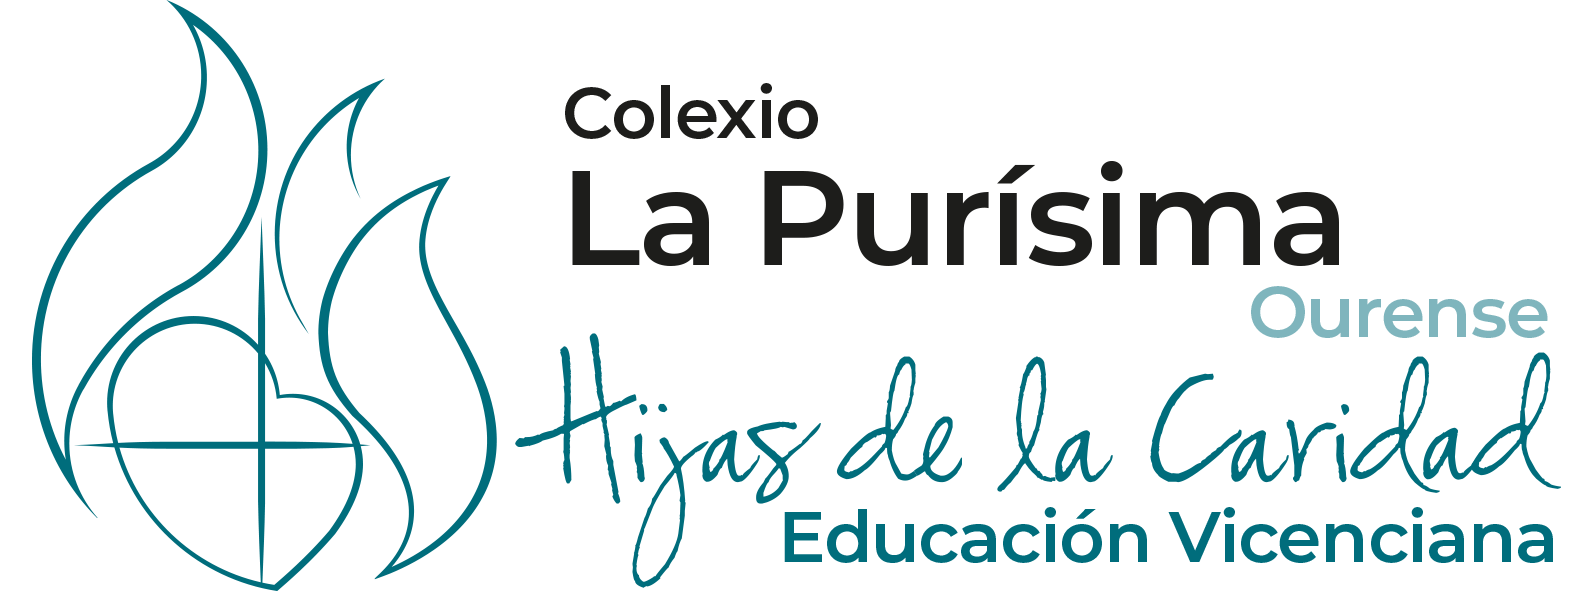 Colegio La Purísima - Ourense